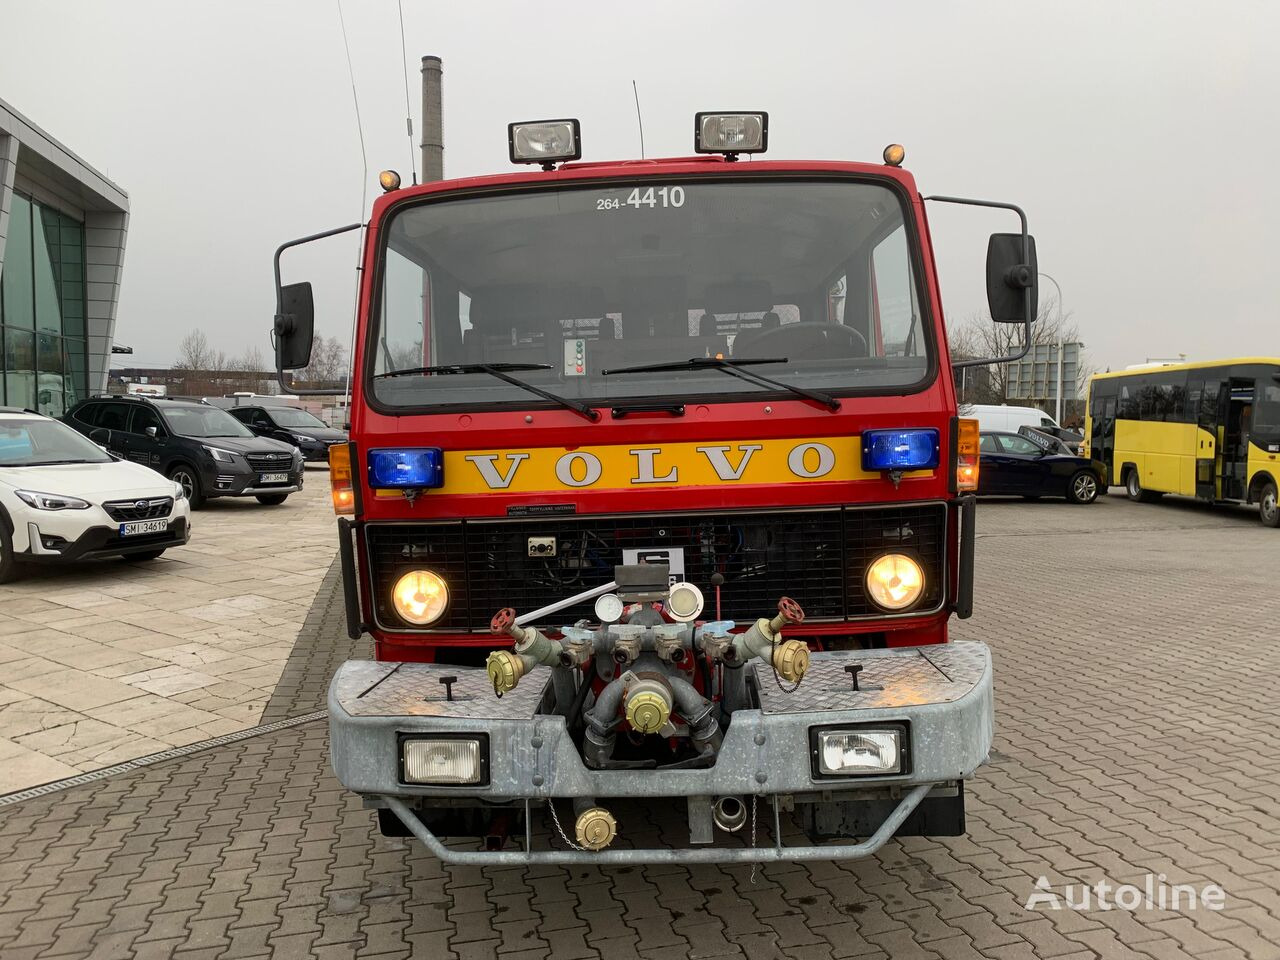 Volvo F613 Turbo / 2000l/min pump / 1000l foam / GOOD CONDITION - Fire truck: picture 3